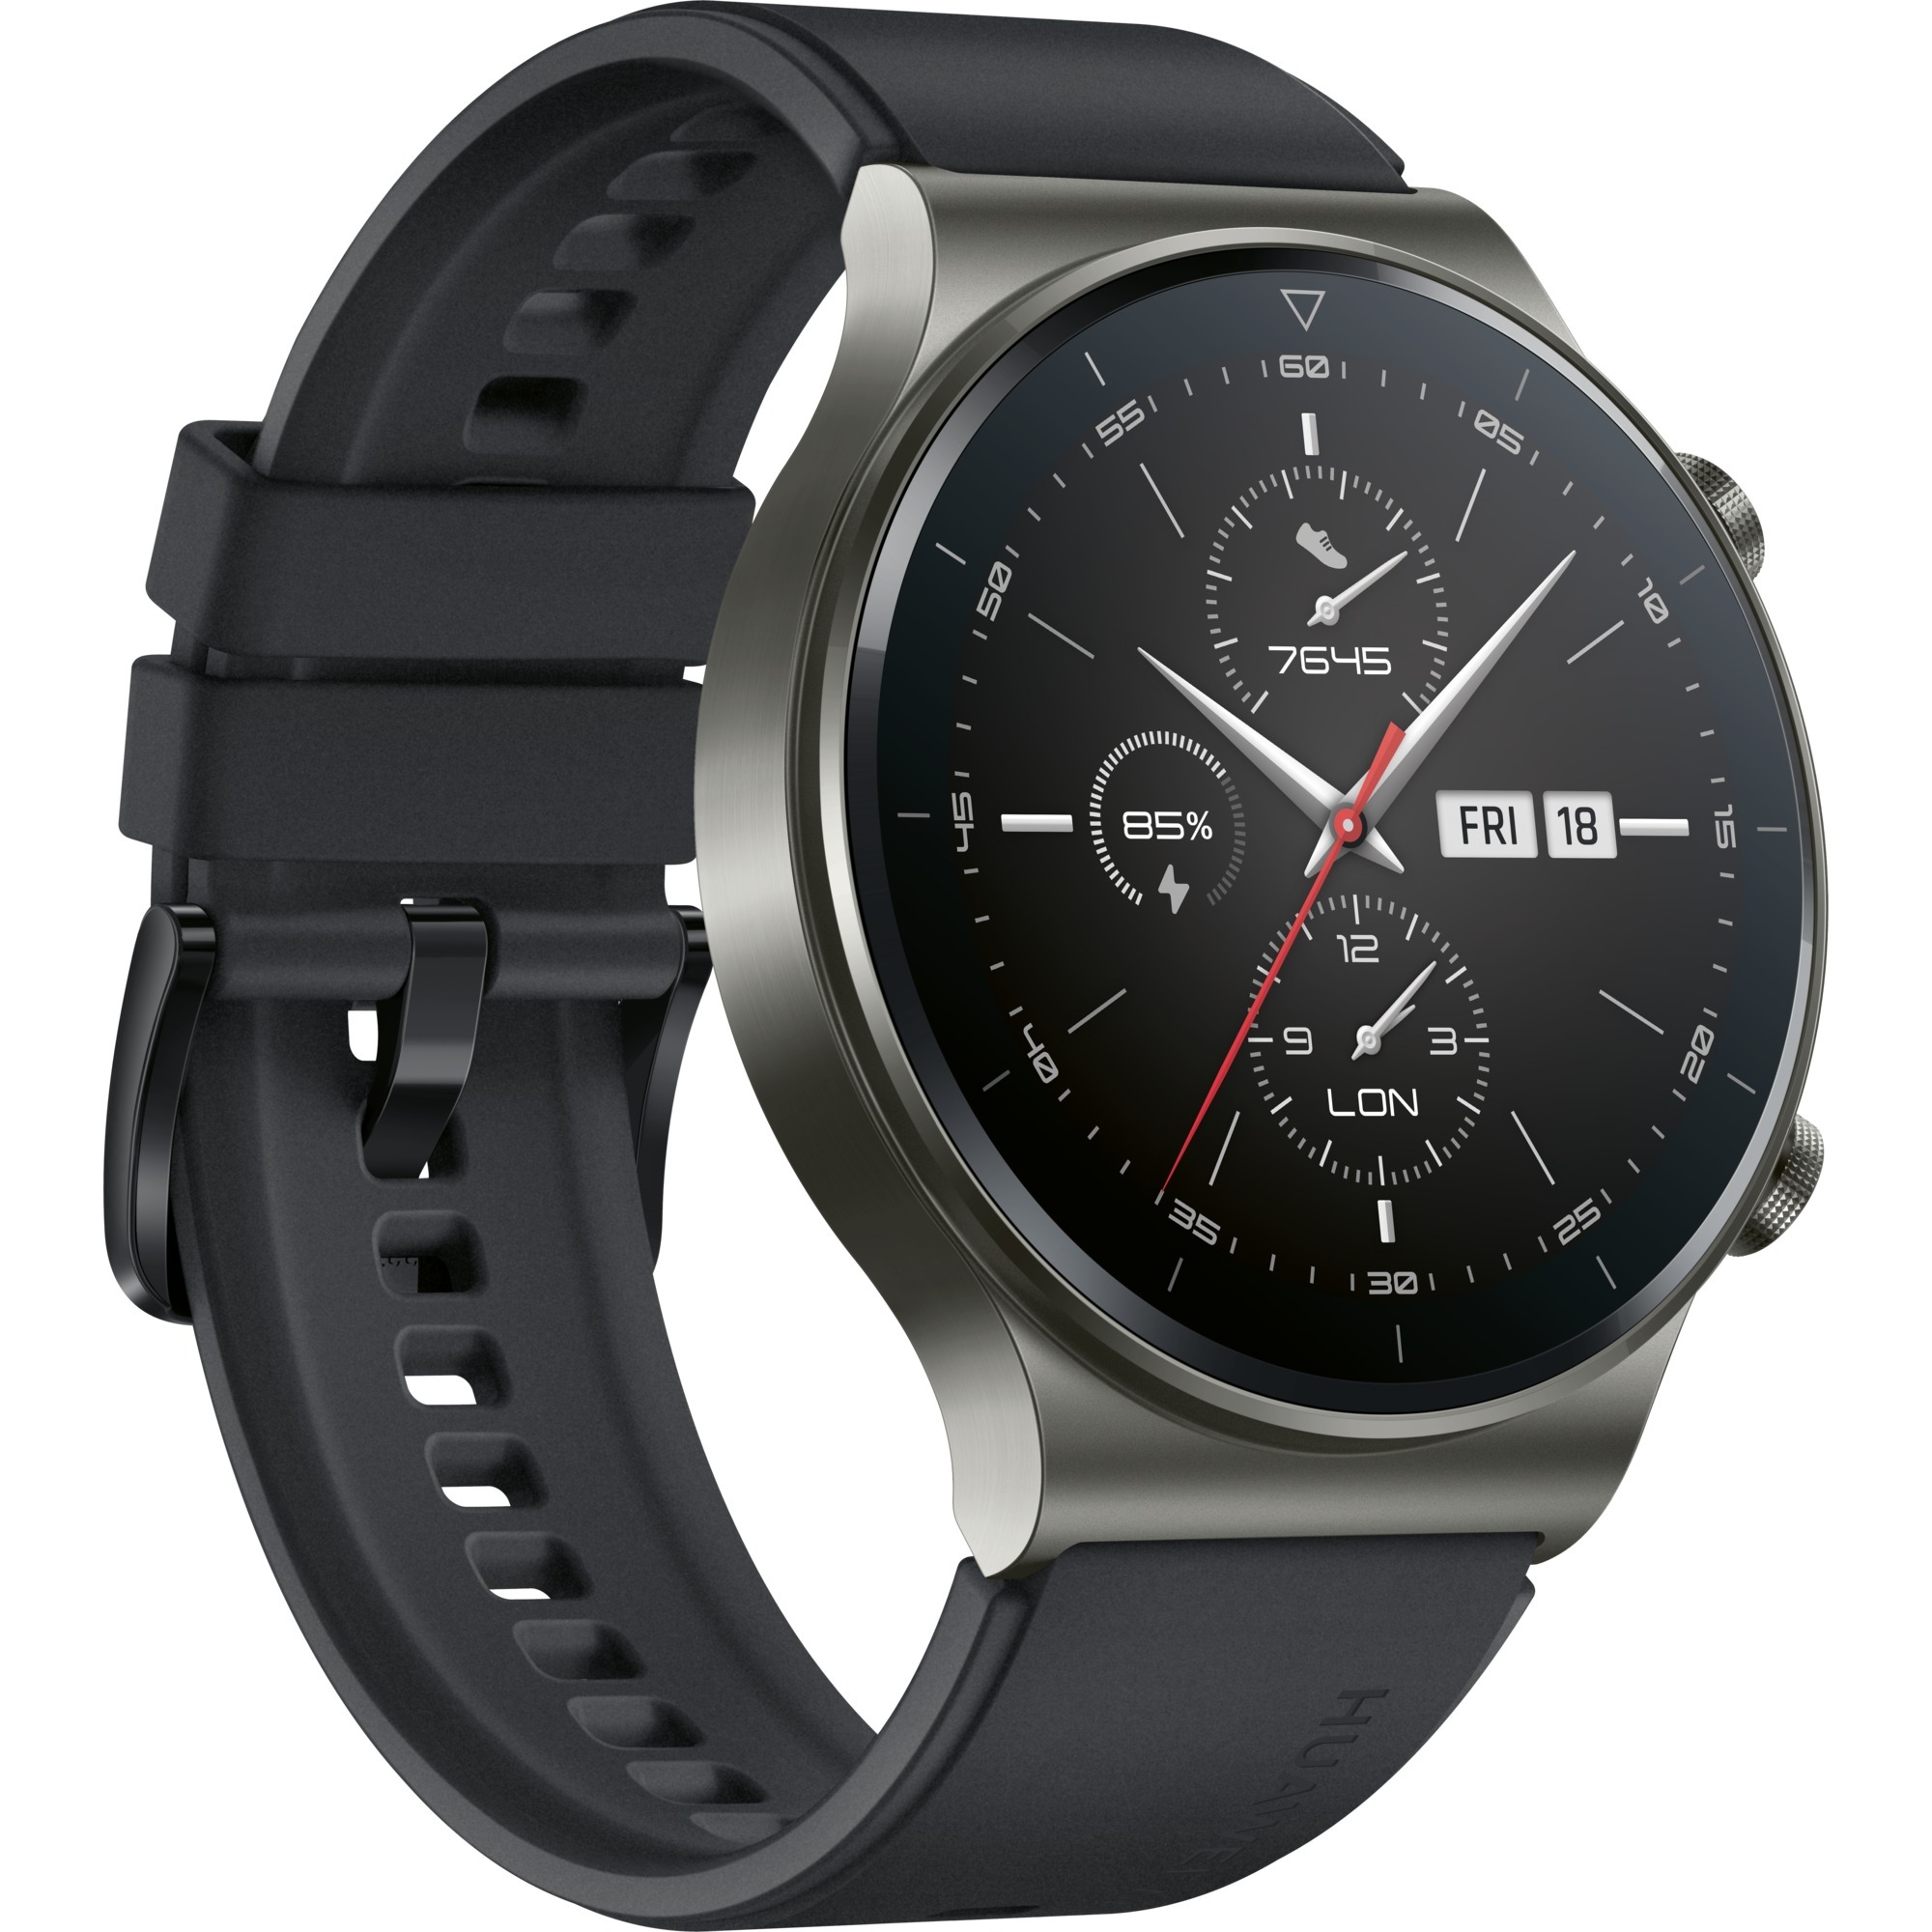 Image of Alternate - Watch GT2 Pro Sport, Smartwatch online einkaufen bei Alternate